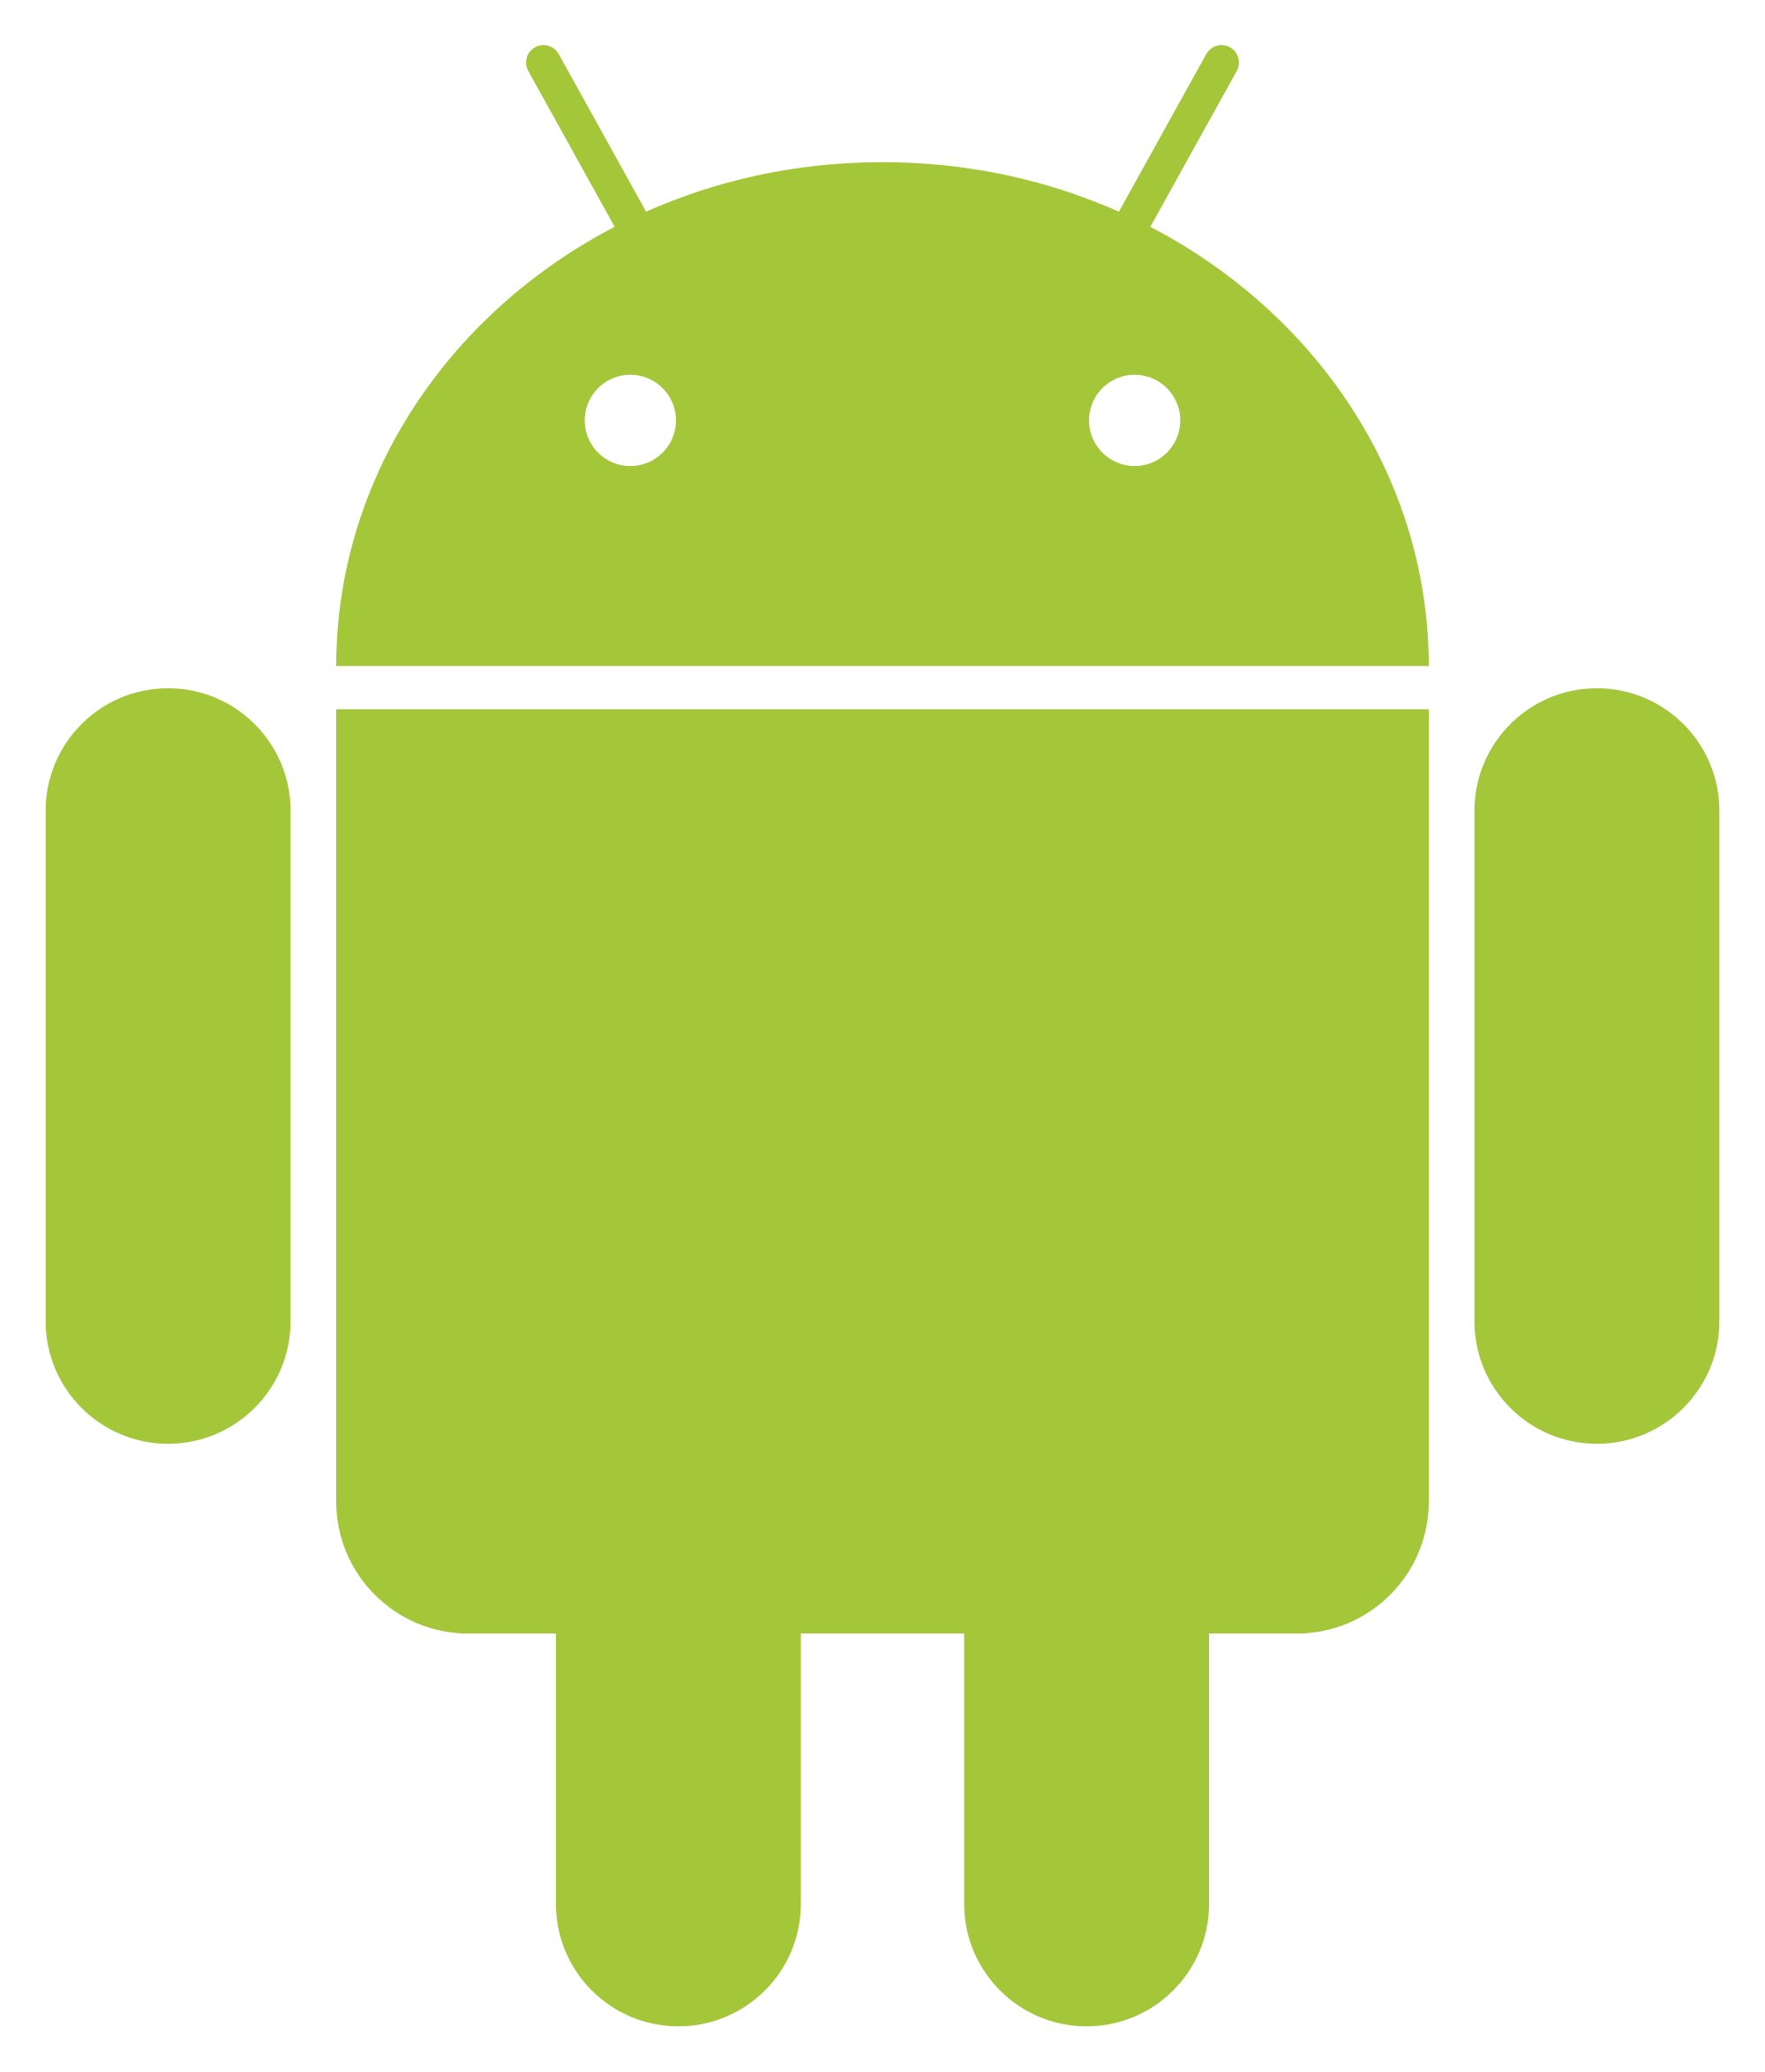 Андроид. Символ андроид. Значок Android. Логотип андроид вектор. Зеленый значок андроида